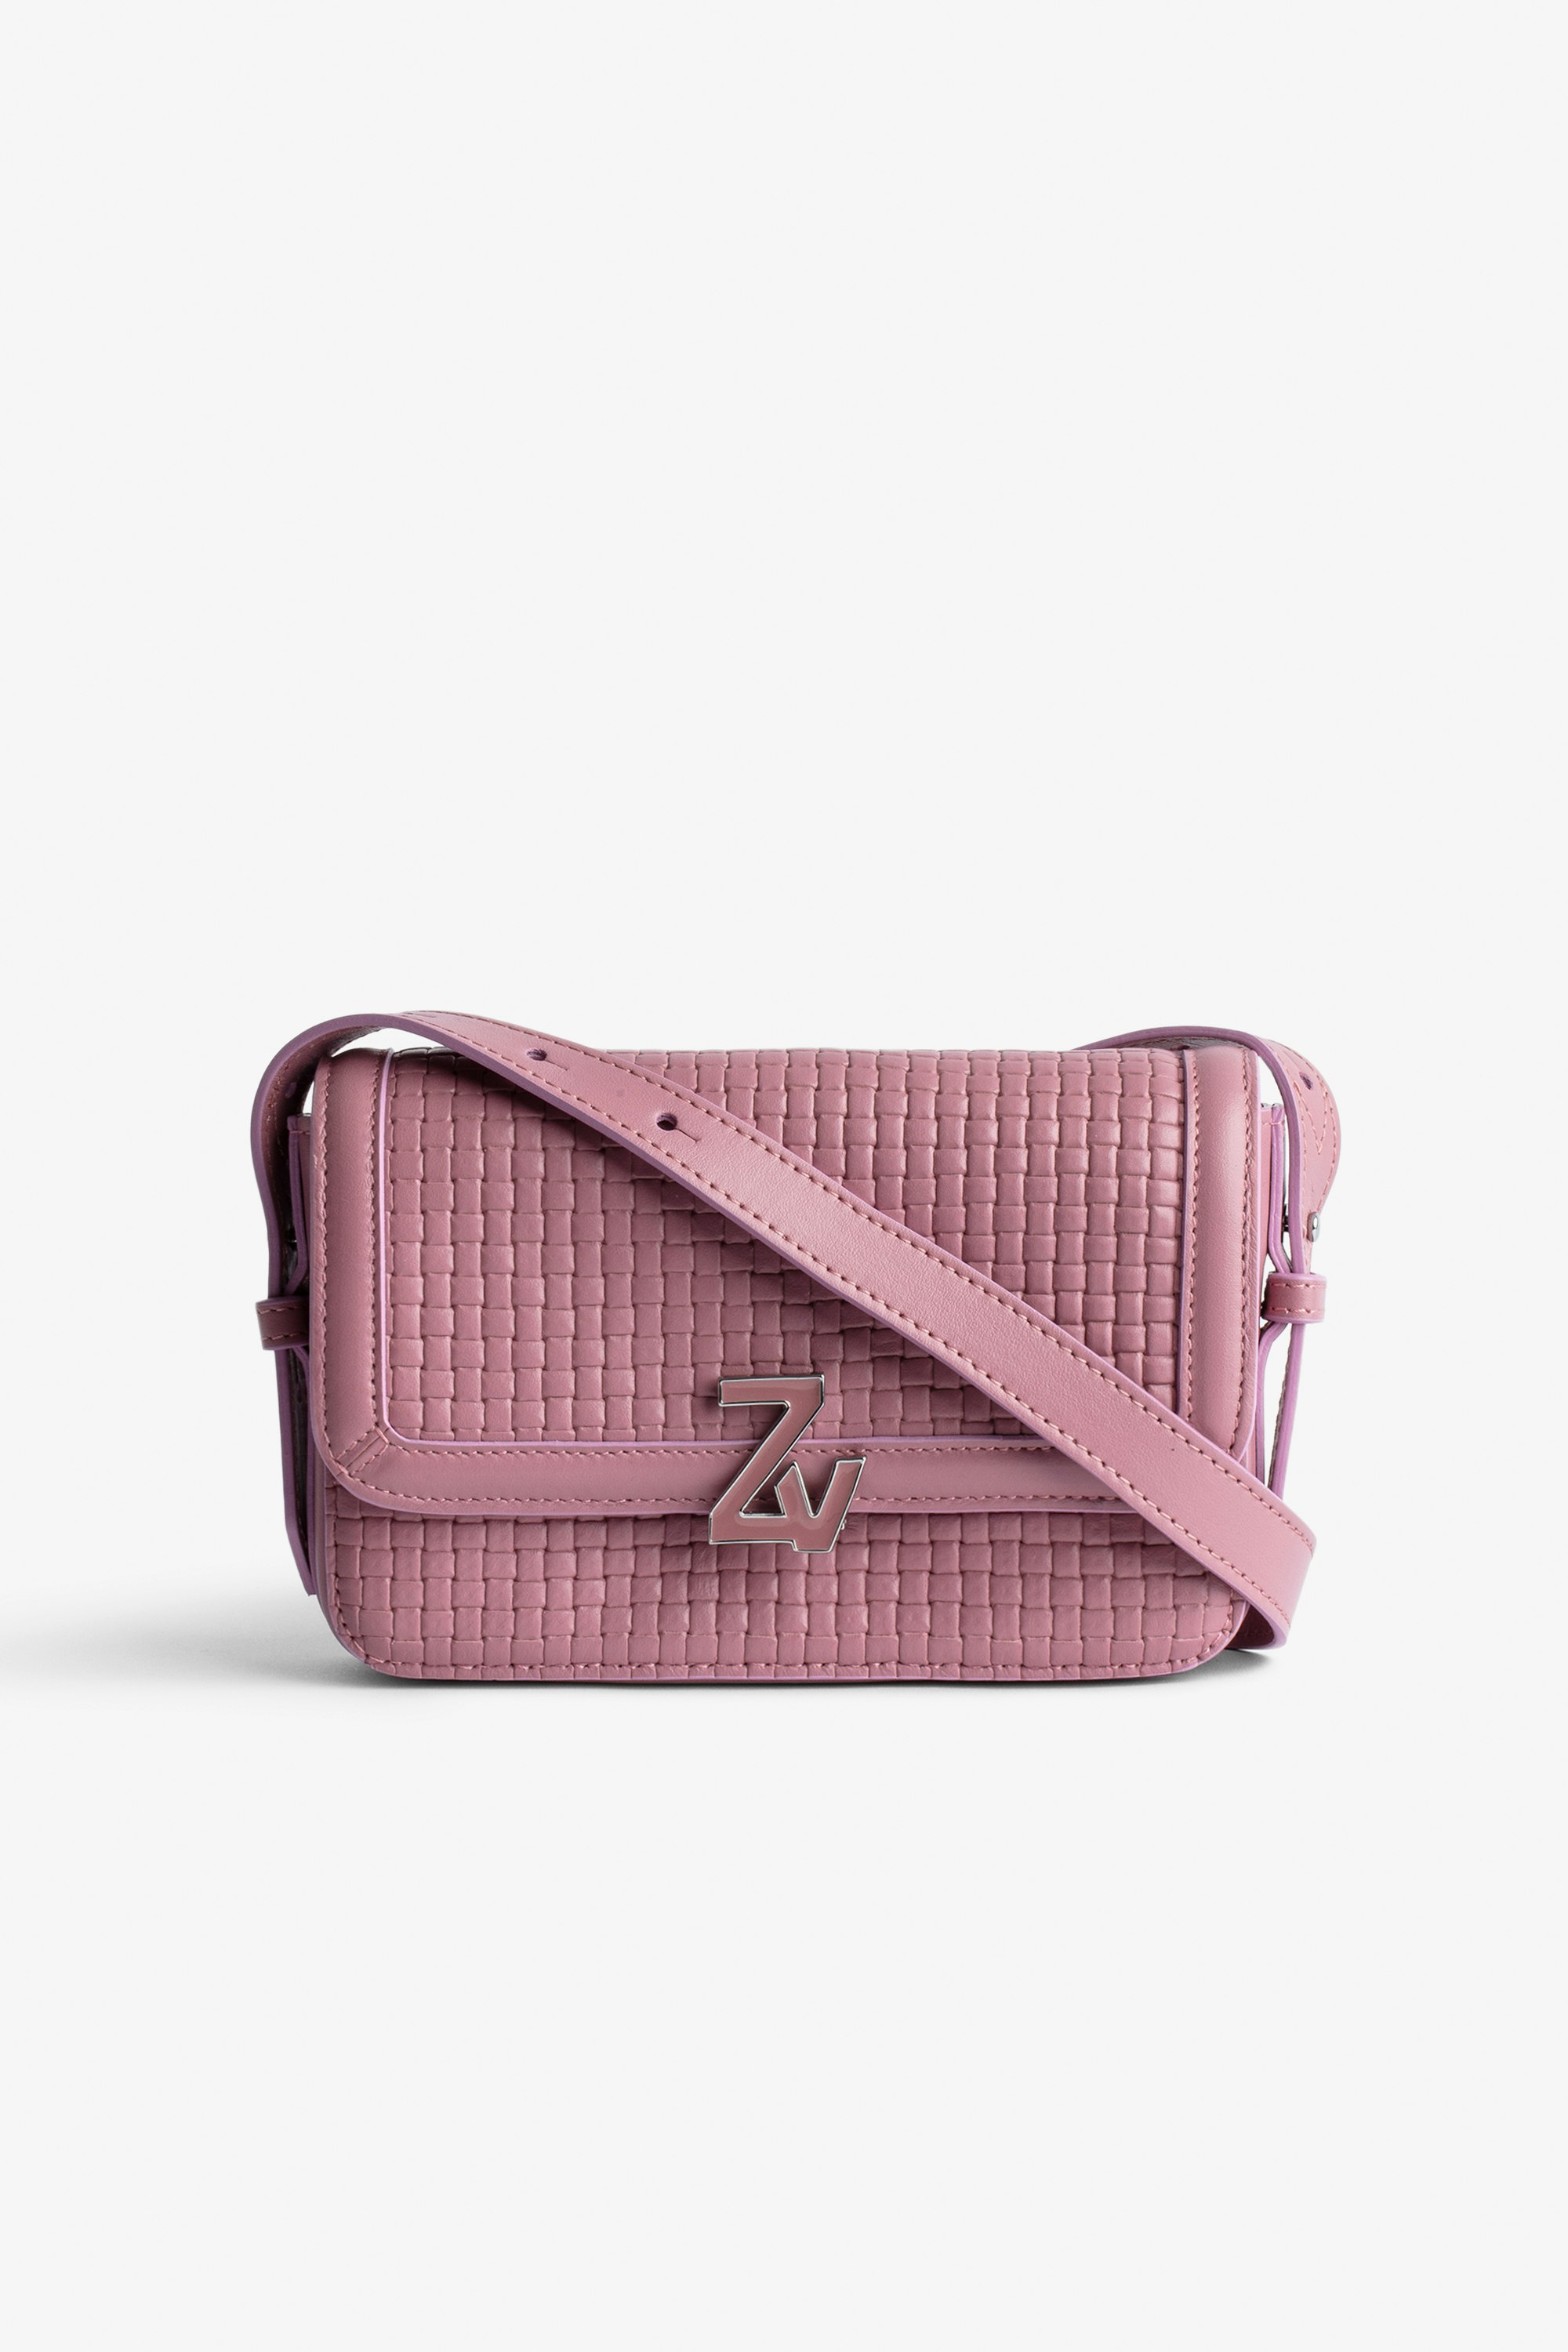 Borsa ZV Initiale Le Mini  Piccola borsa in pelle intrecciata rosa con tracolla e fermaglio ZV - Donna